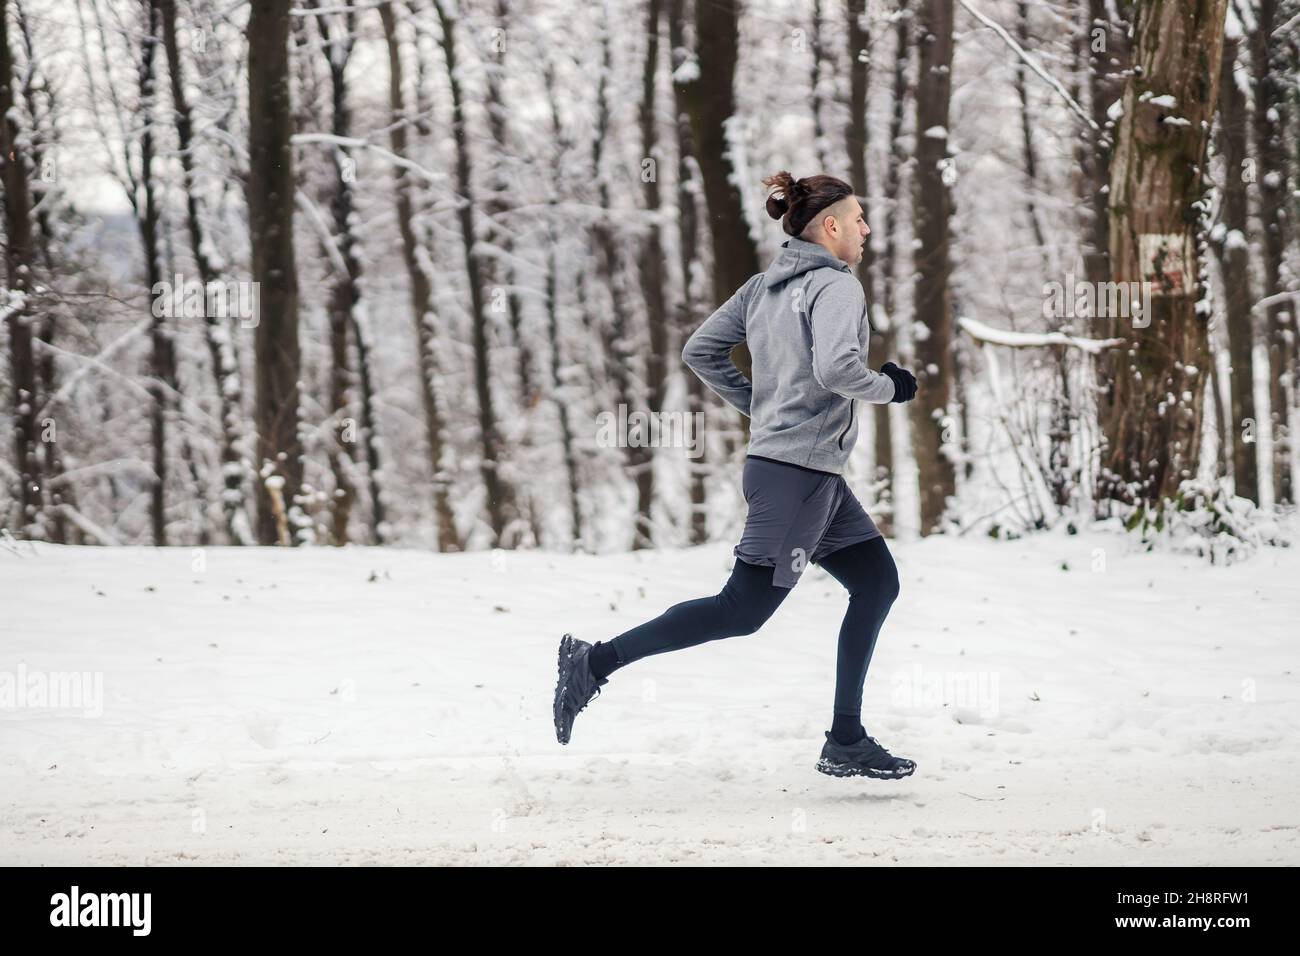 Sportivo che corre nei boschi durante la nevosa giornata invernale. Esercizi cardiovascolari, fitness invernale, fitness all'aperto Foto Stock